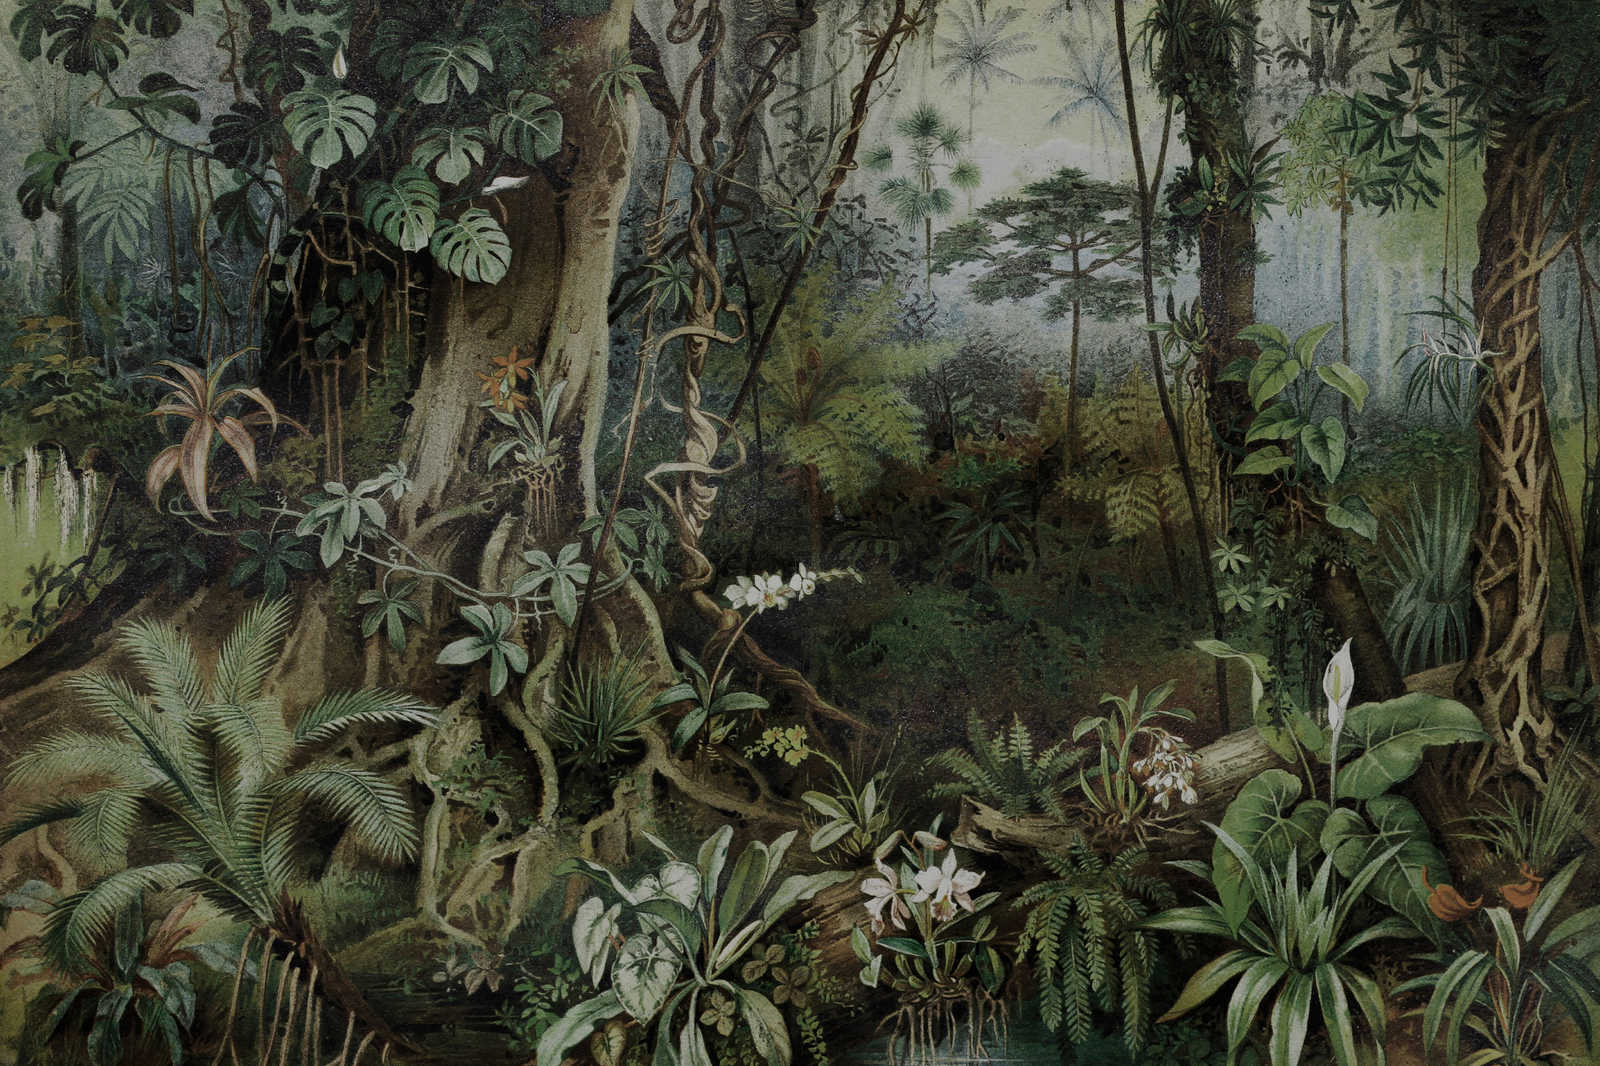             Dschungel Leinwandbild im Zeichenstil | walls by patel – 0,90 m x 0,60 m
        